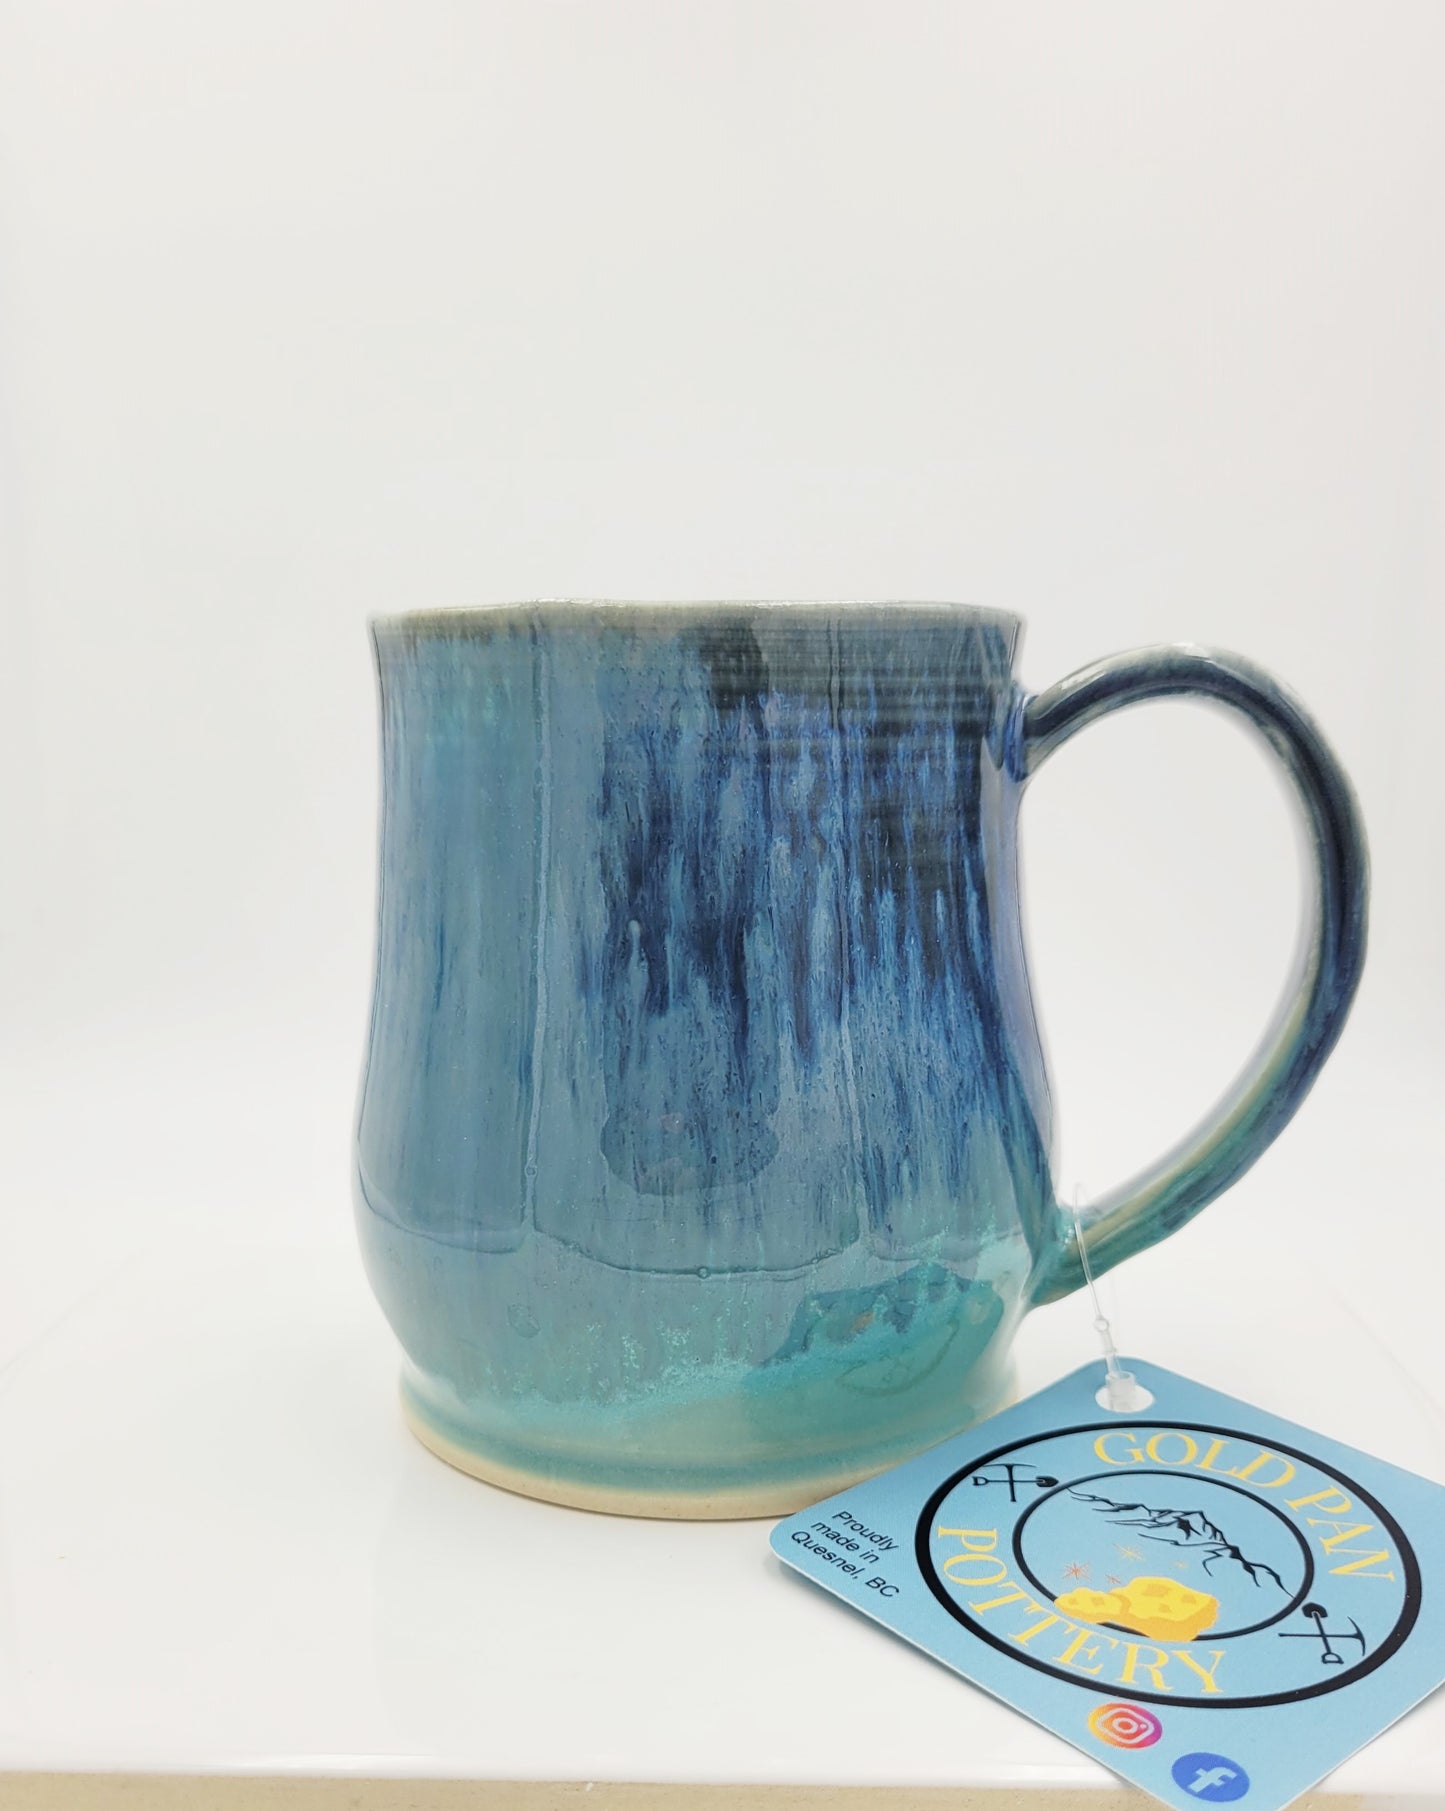 Teal and Blue Pottery Mug